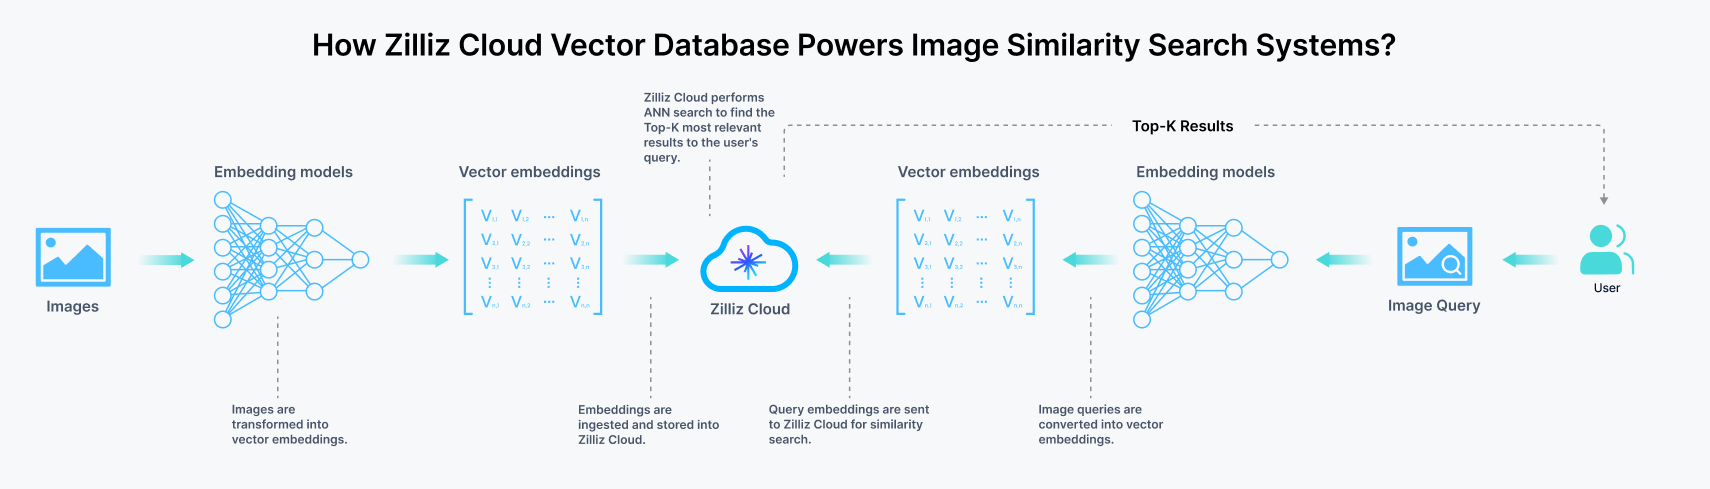 Zilliz Cloud 为图片相似性搜索系统提供强大引擎